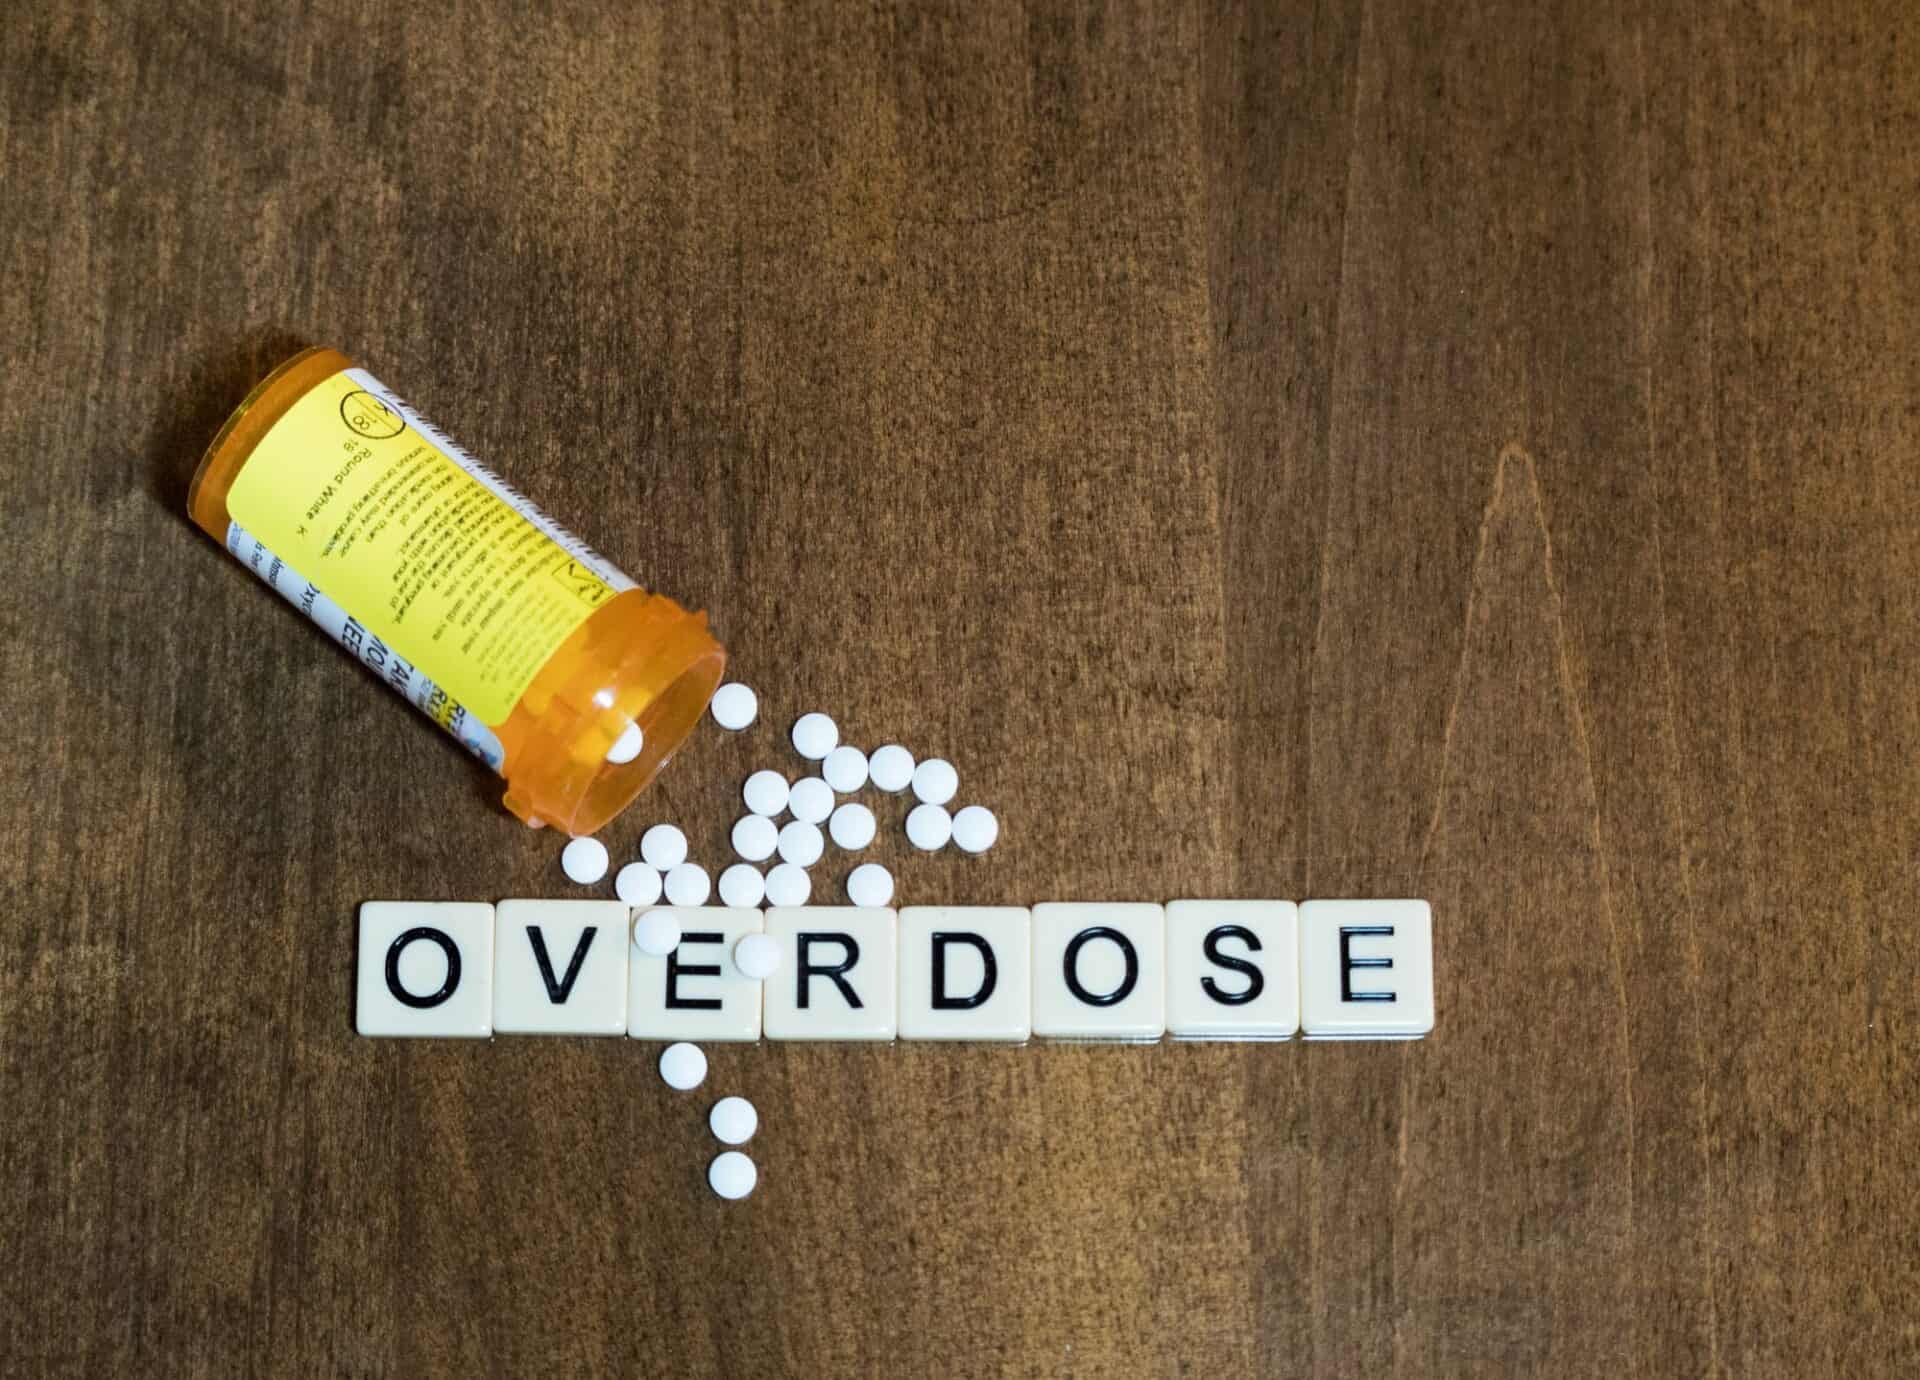 Suboxone overdose